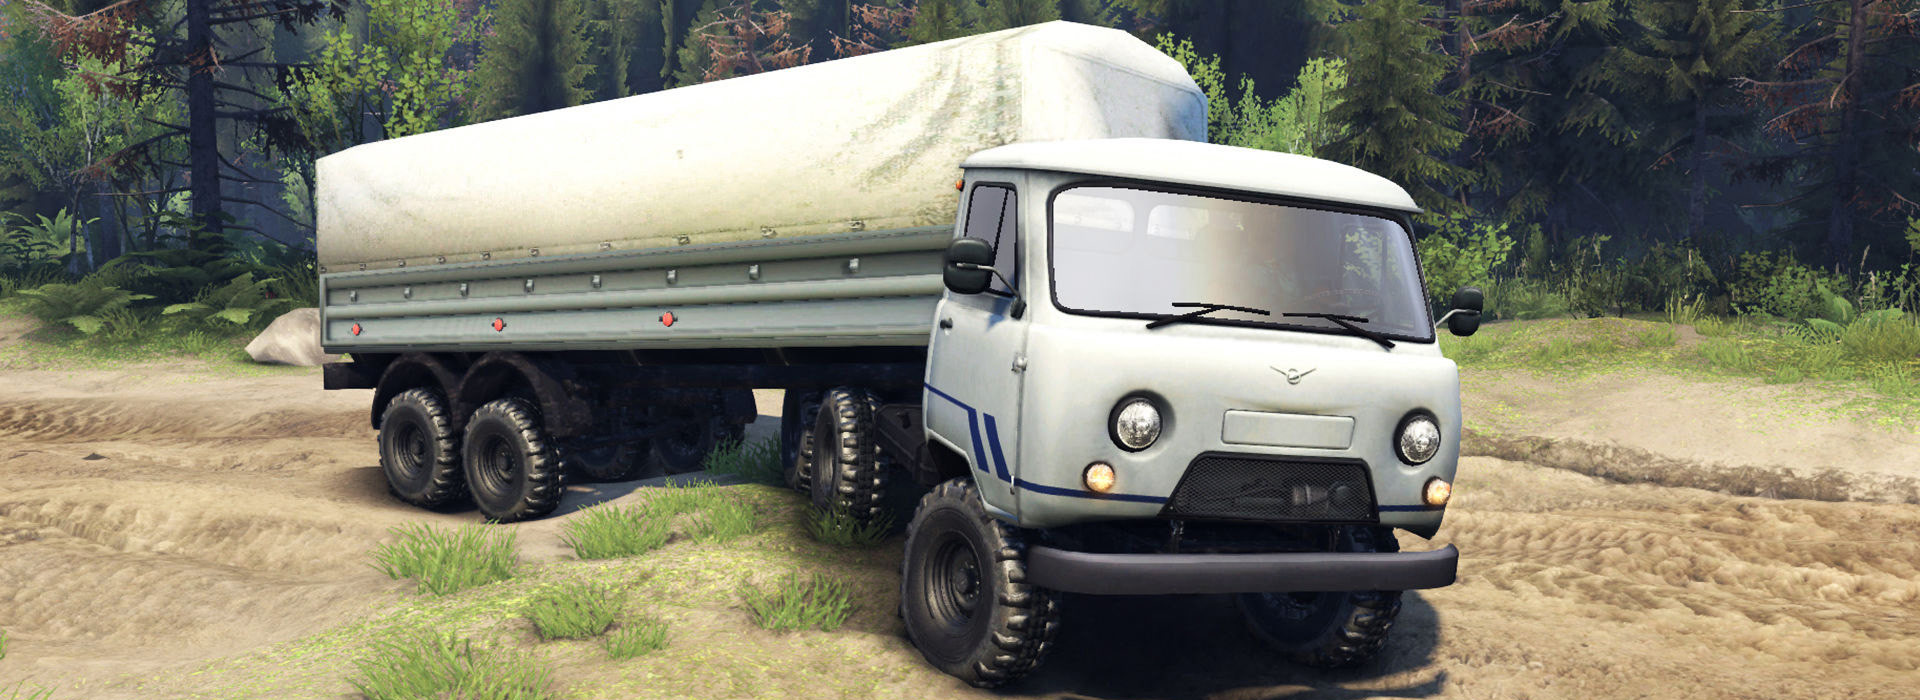 Запчасти для грузовиков UAZ (УАЗ)